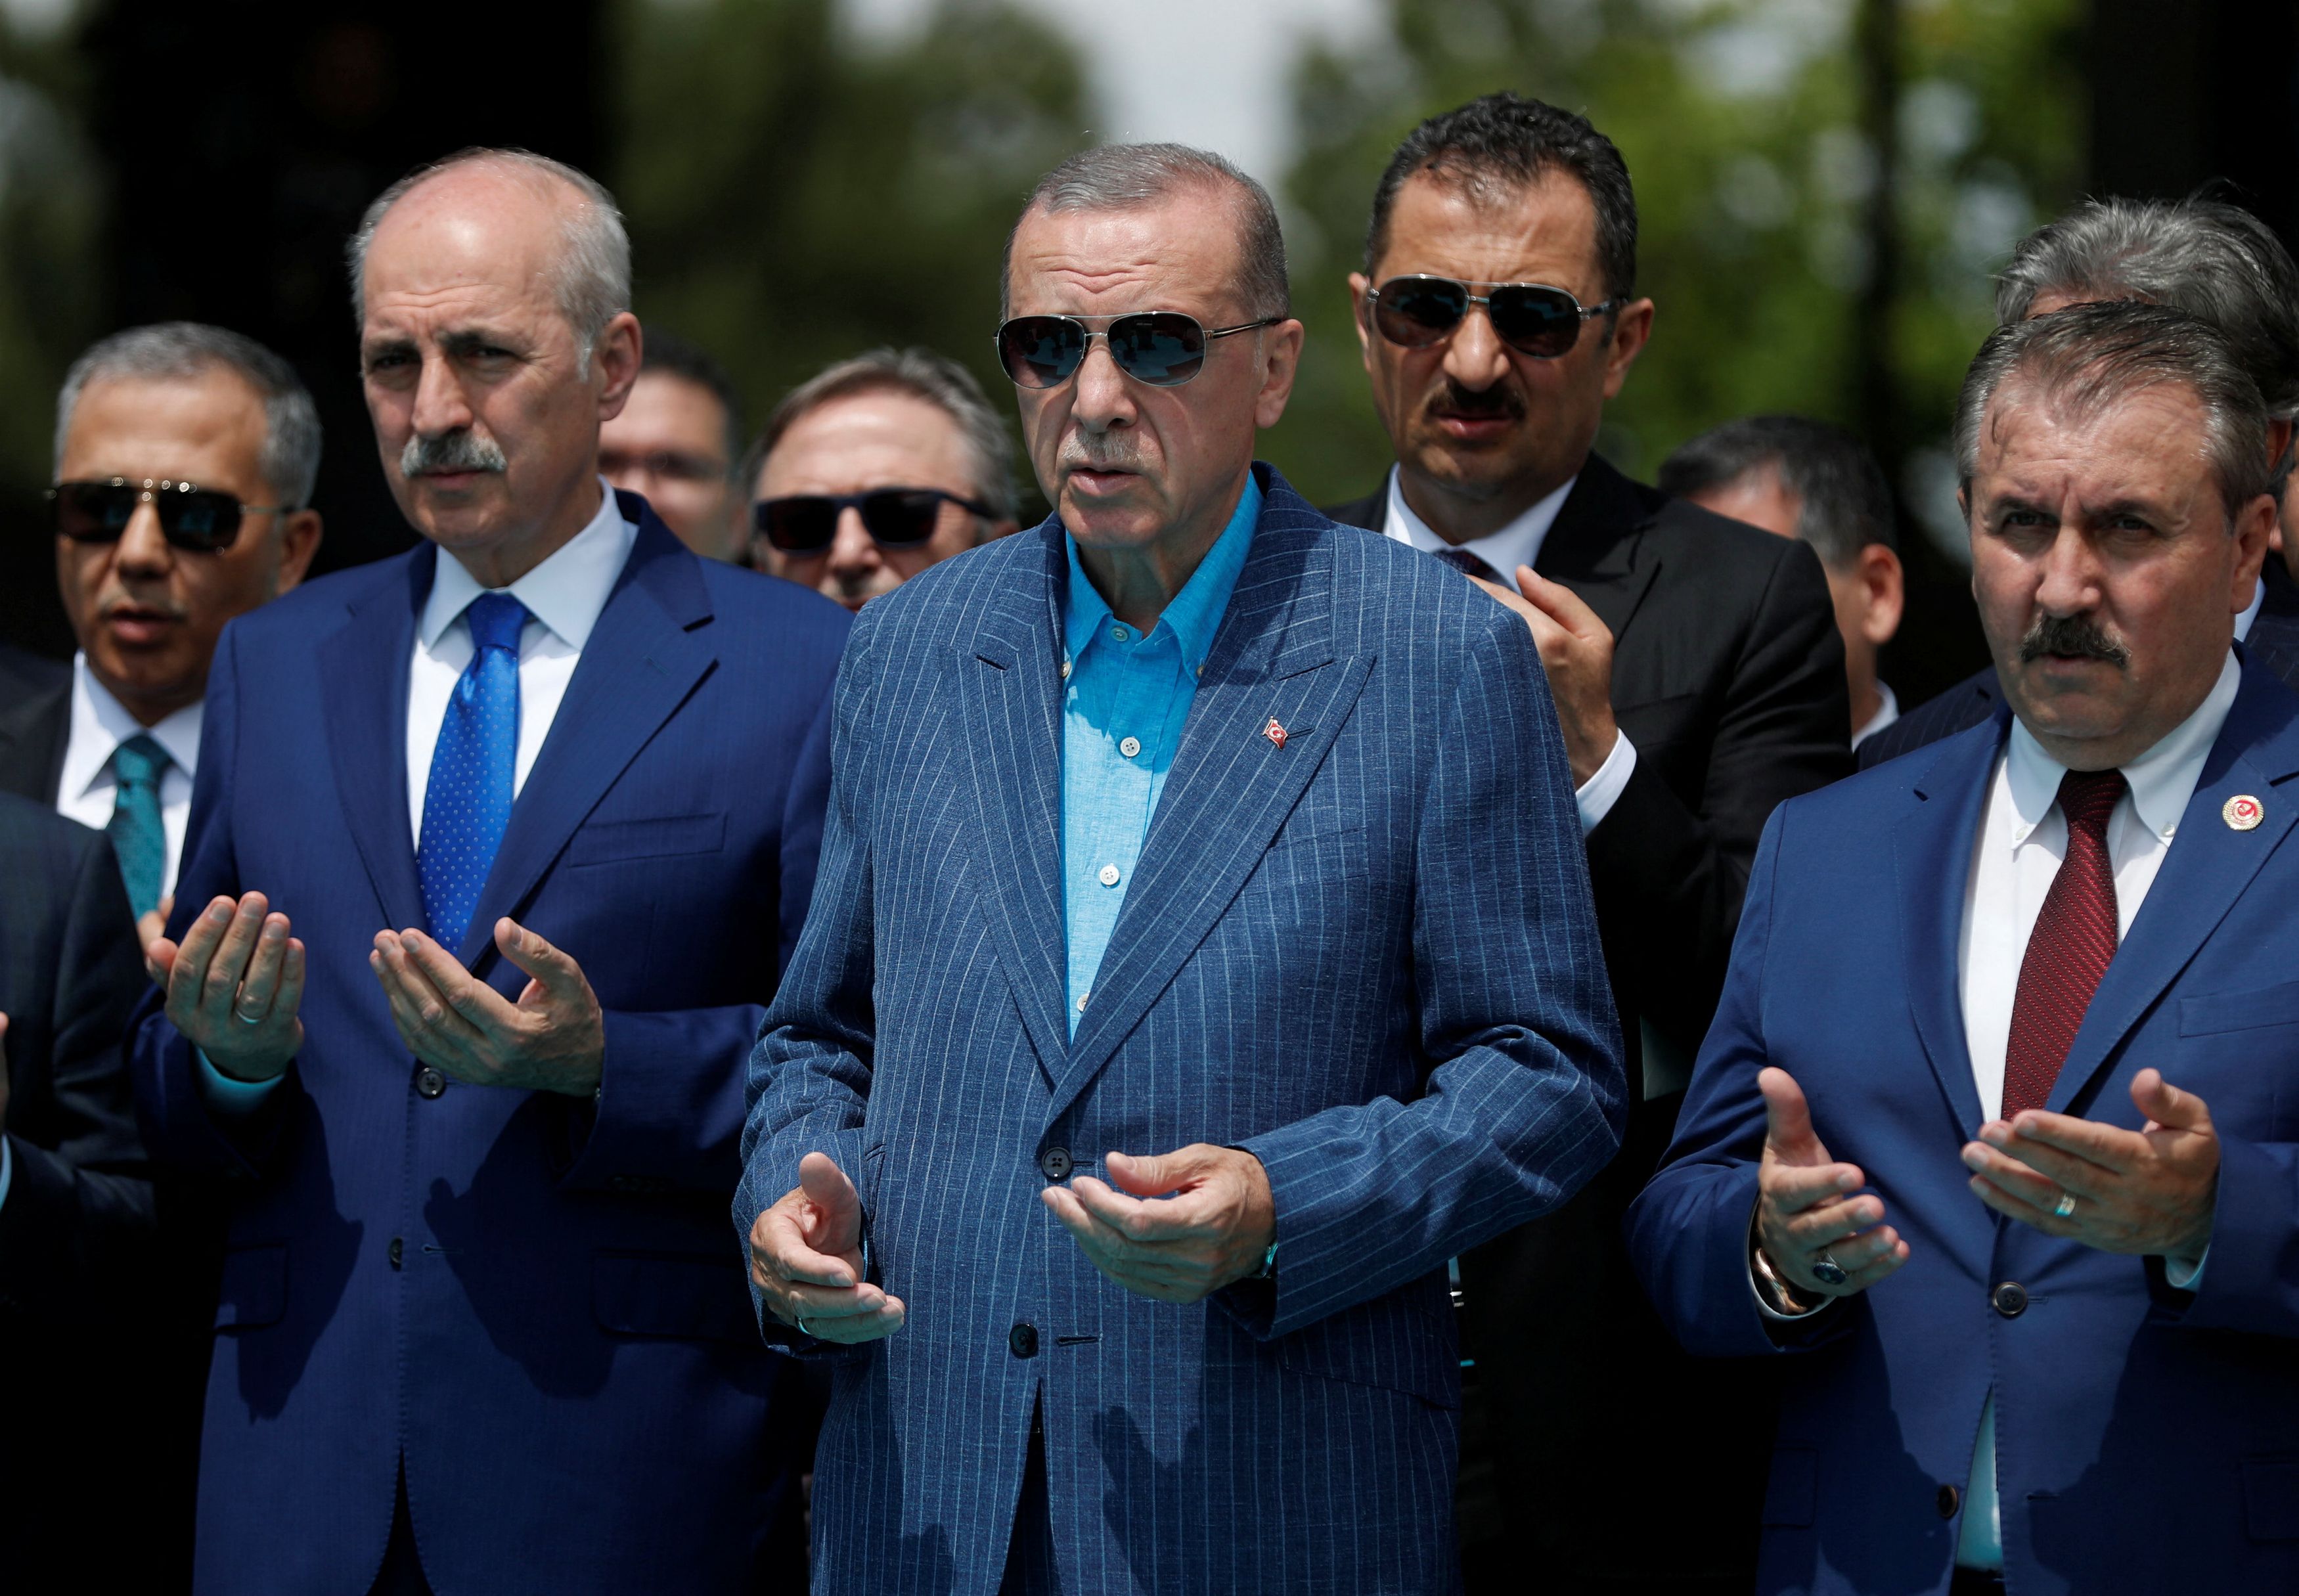 Εκλογές Τουρκία: «Βομβαρδισμός» υποσχέσεων λίγο πριν τις κάλπες – Ο «πορθητής» του 21ου αιώνα Ερντογάν